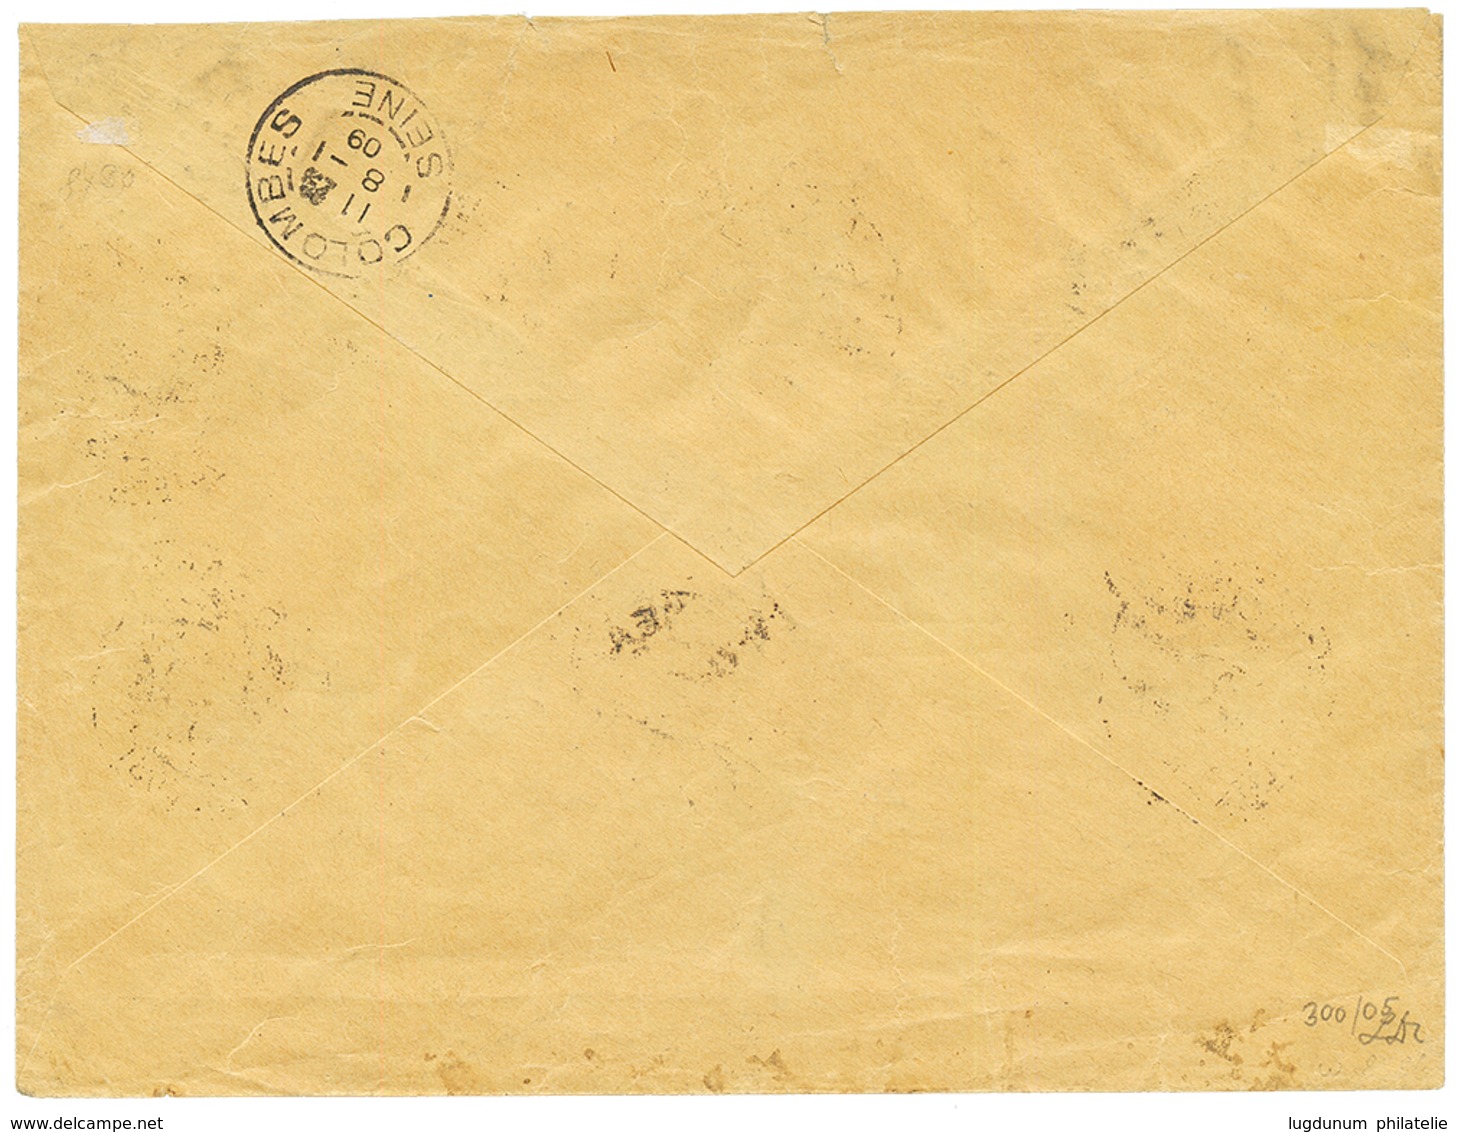 CANEA : 1908 5c To 1 FRANC Canc. CANEA On REGISTERED Envelope To FRANCE. Vvf. - Levant Autrichien